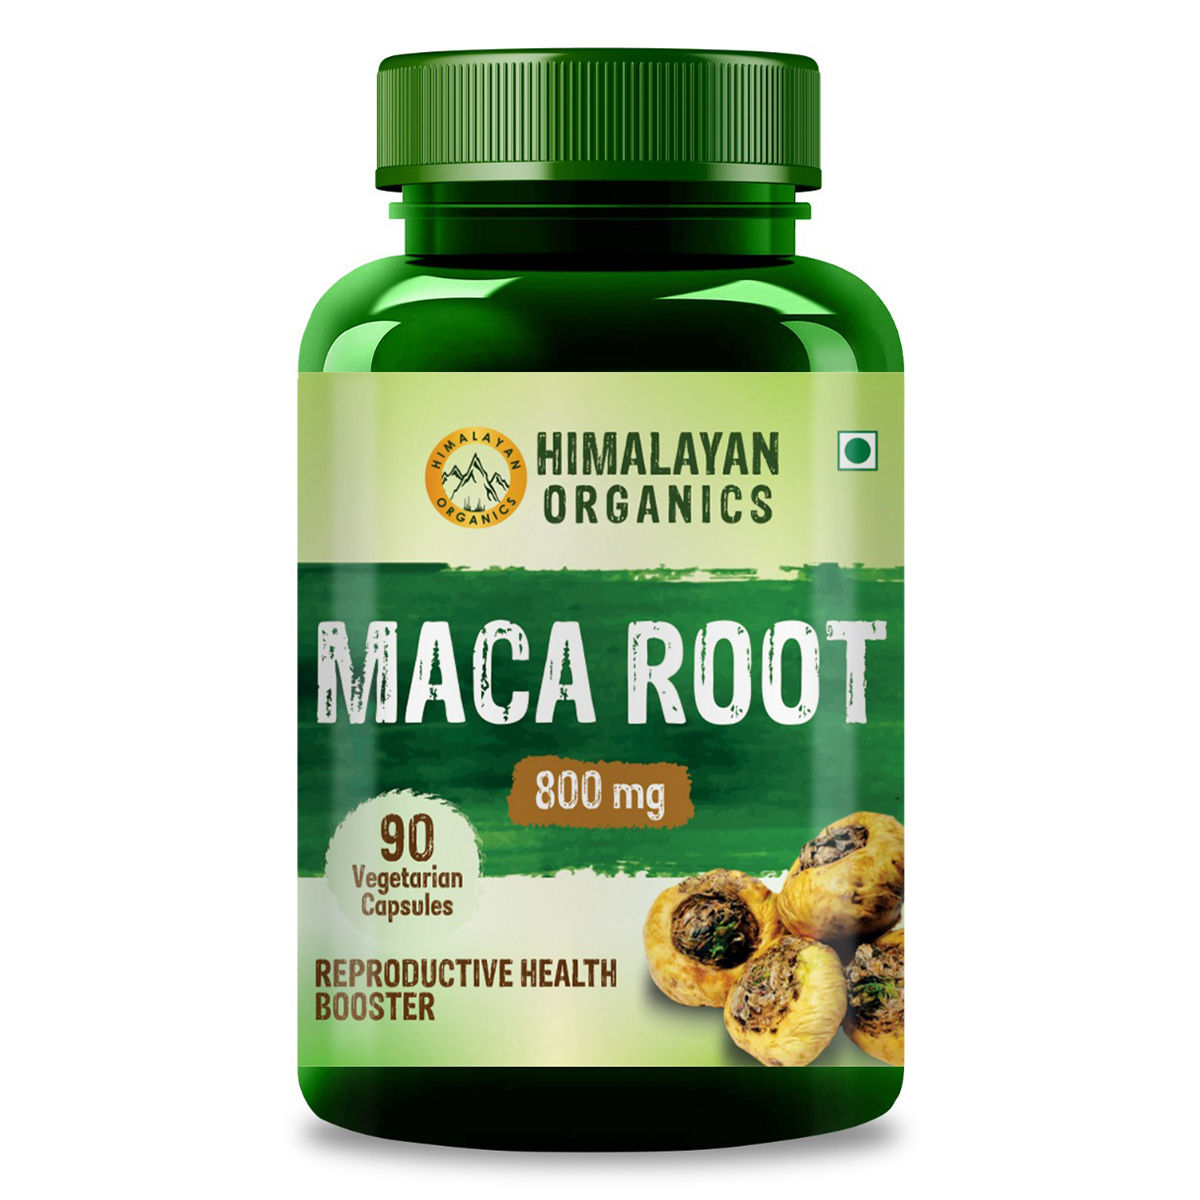 Buy Himalayan Organics Maca Root 800 mg, 90 Capsules Online